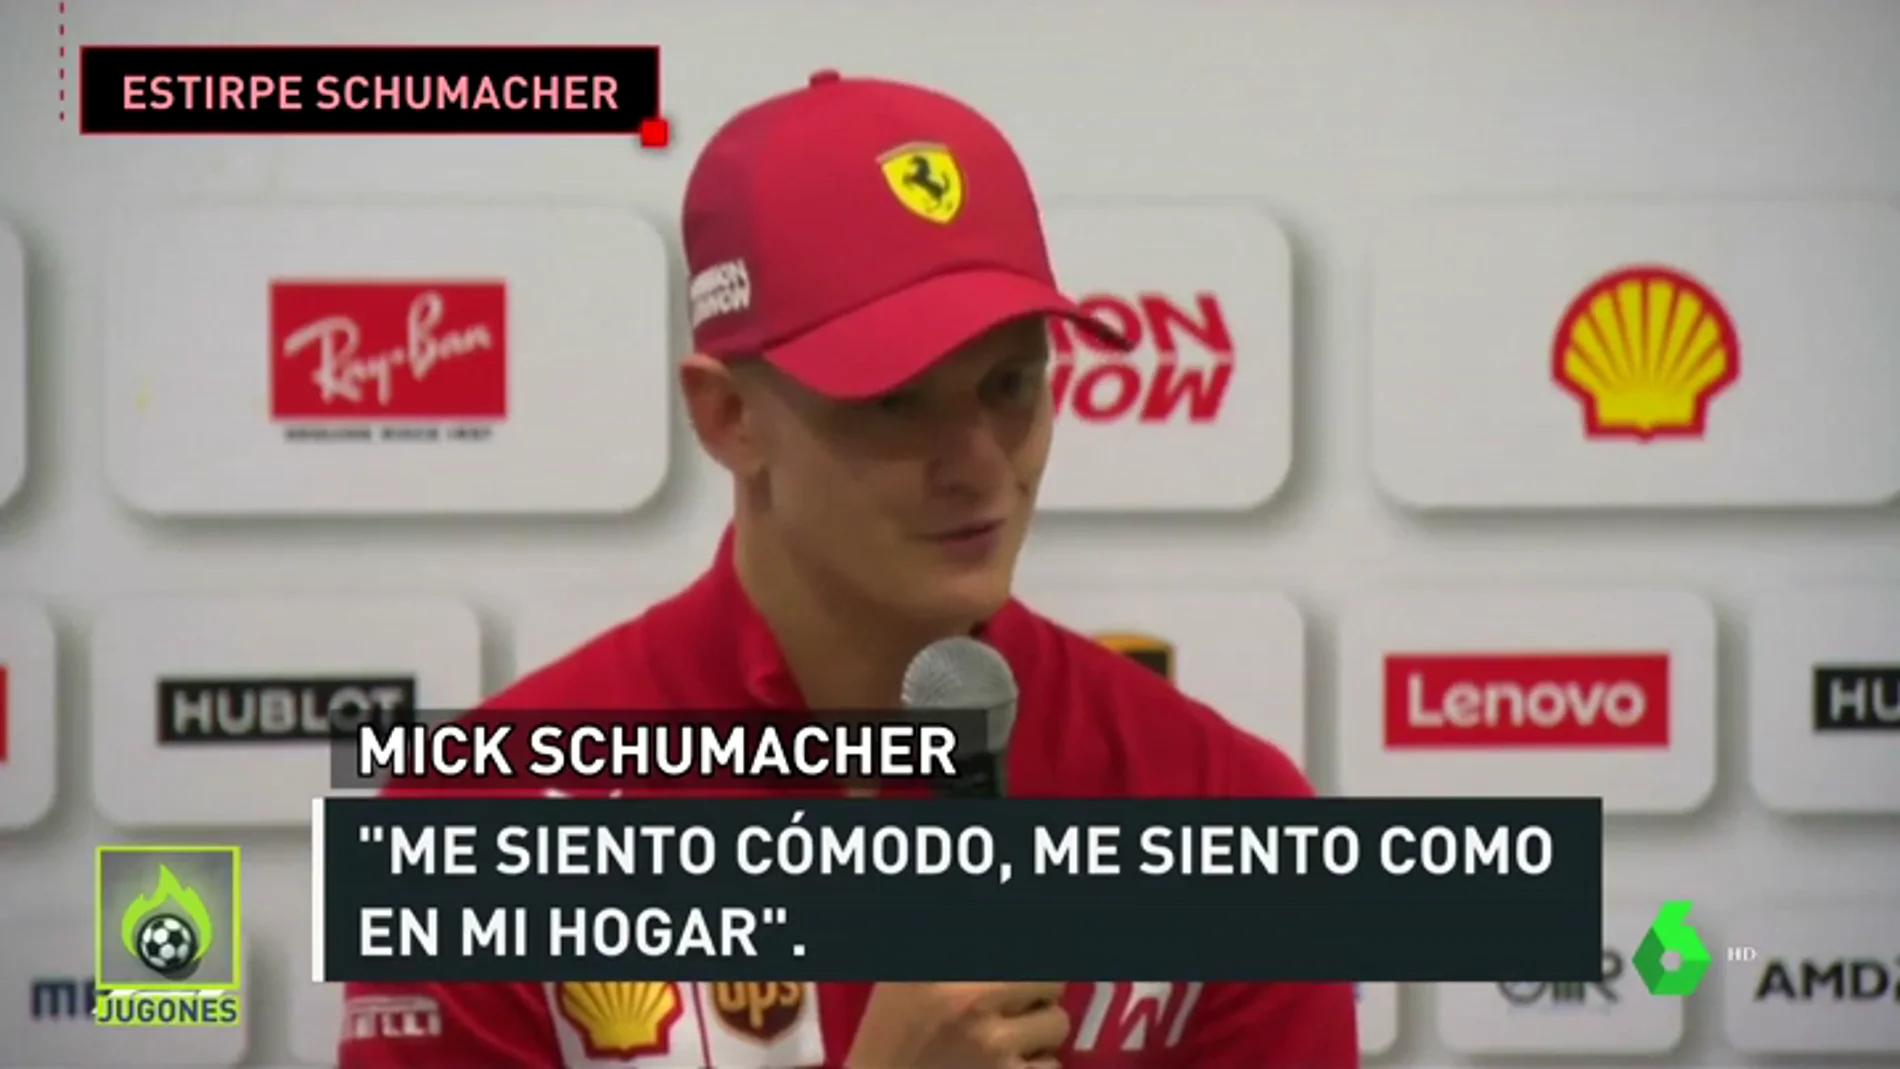 La imagen que emociona a los ferraristas: Mick Schumacher entrando en el box de Ferrari 